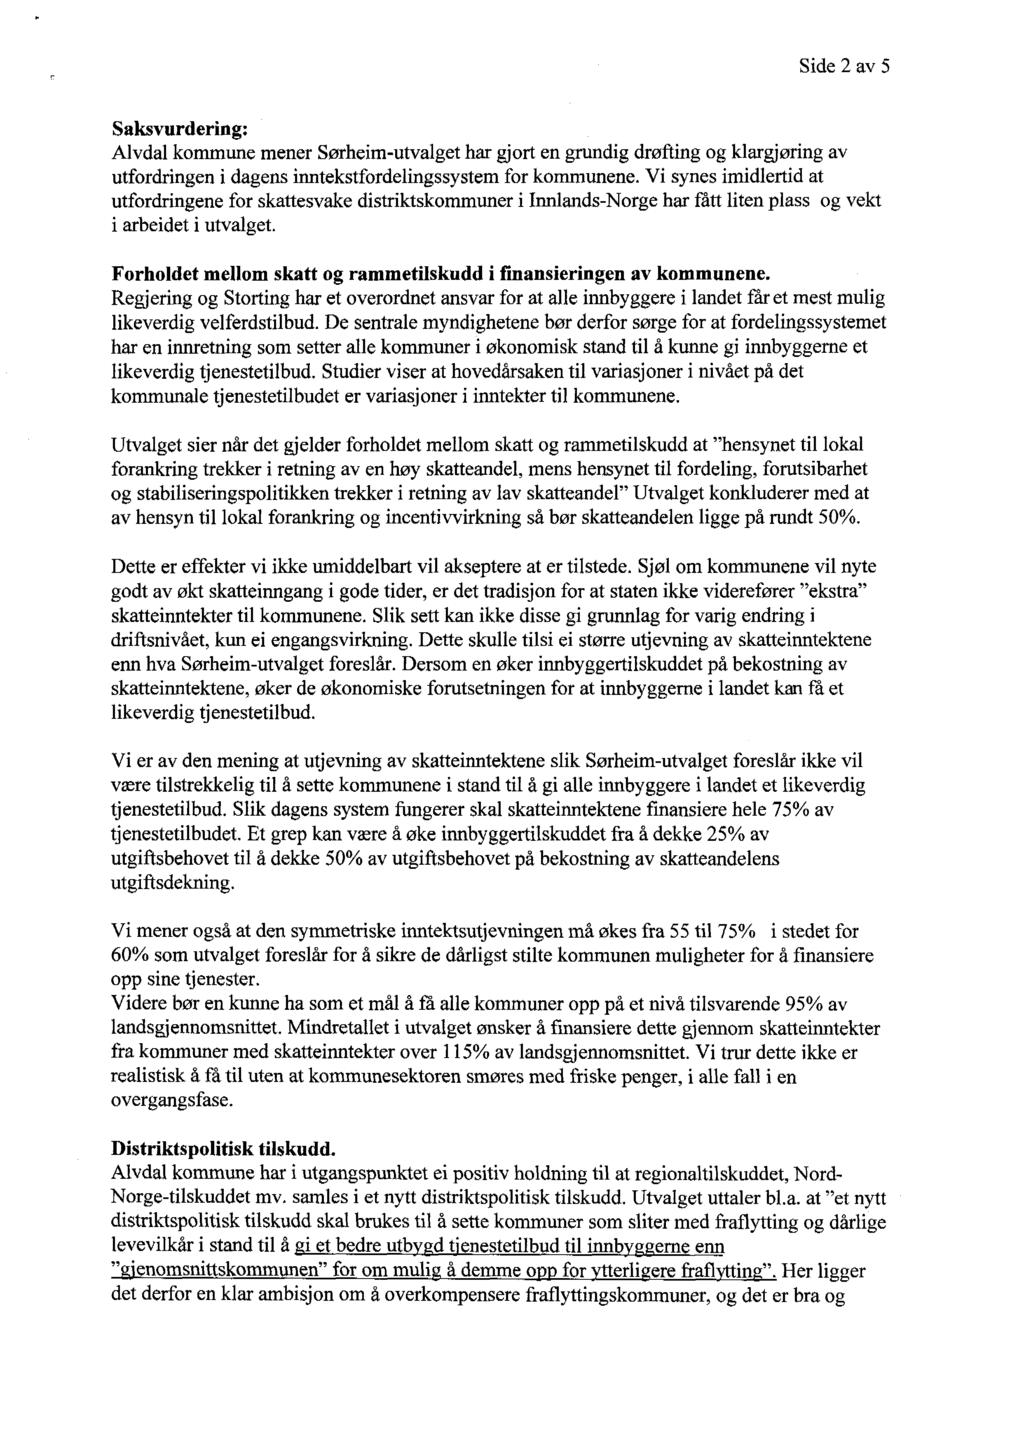 Side 2 av 5 Saksvurdering: Alvdal kommune mener Sørheim-utvalget har gjort en grundig drøfting og klargjøring av utfordringen i dagens inntekstfordelingssystem for kommunene.